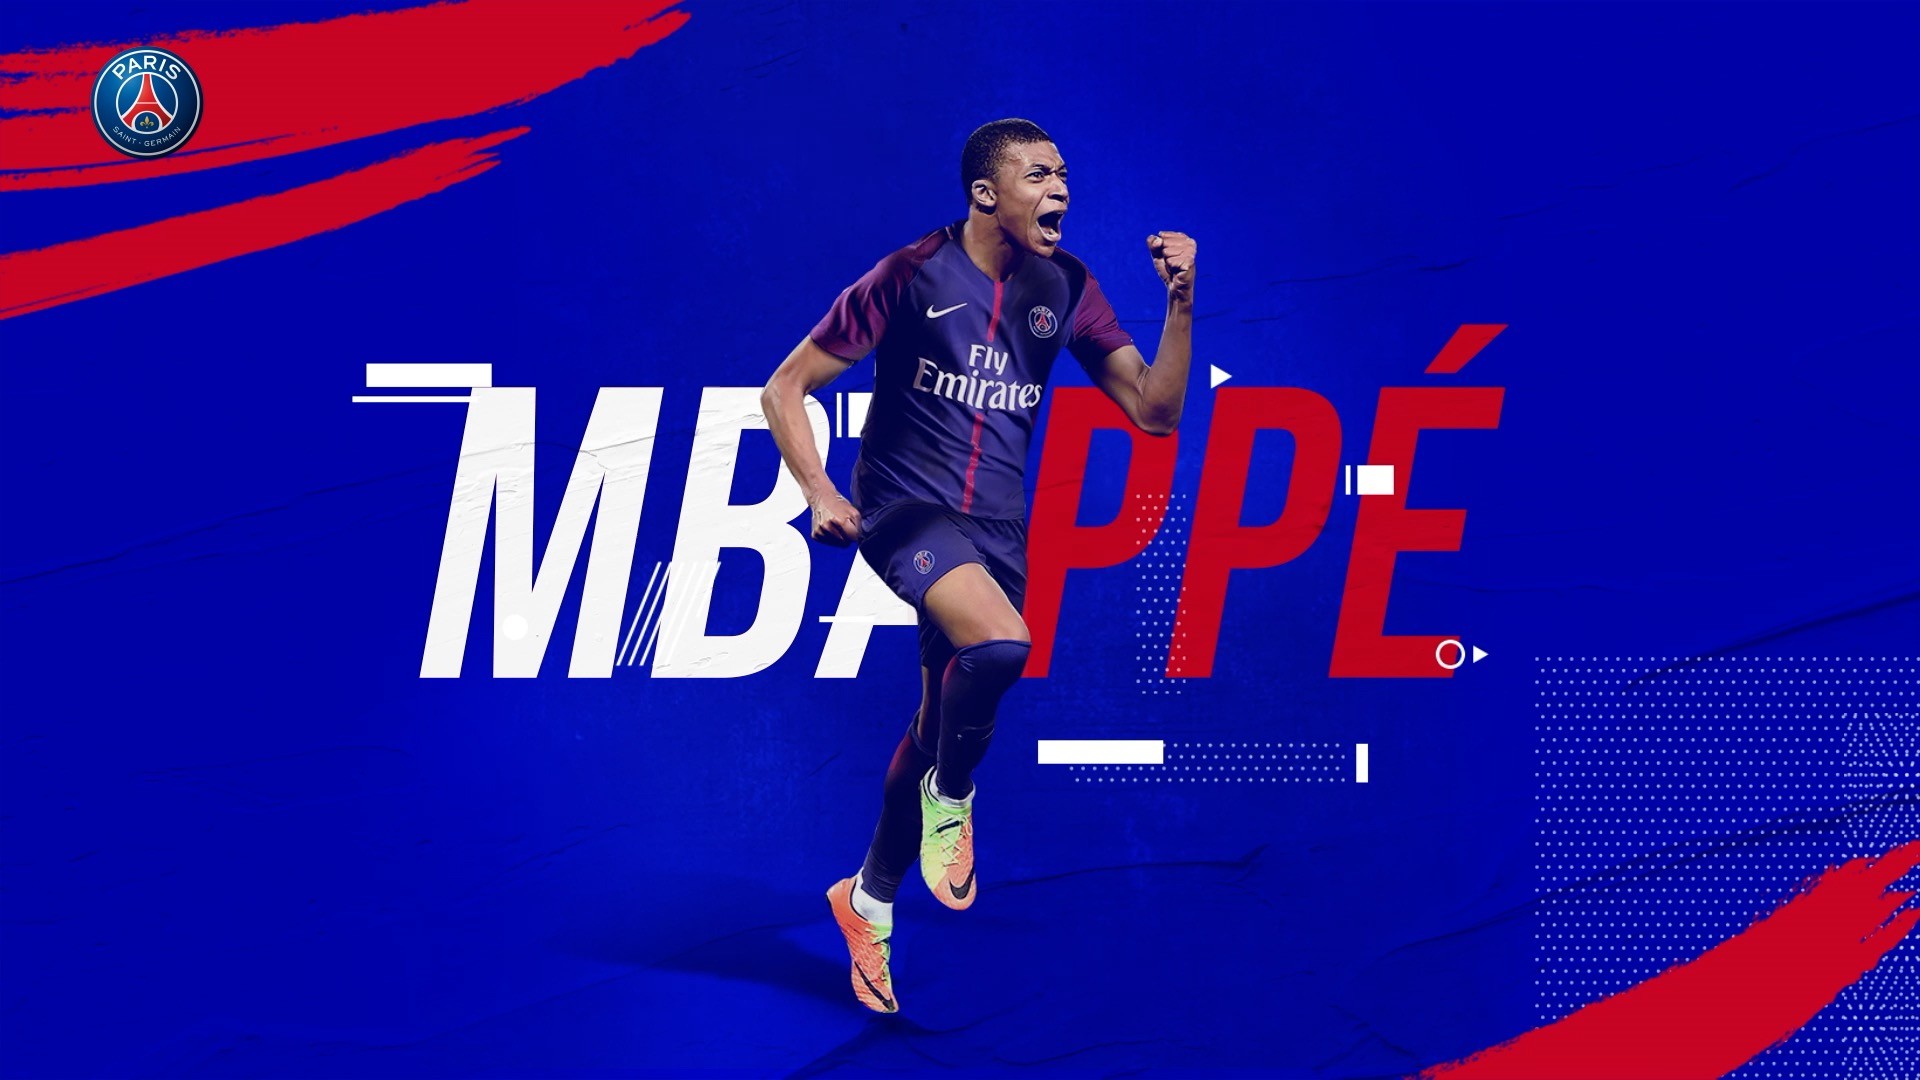 1920x1080 Credit: PSG.com / MbappÃ© is now part of the Paris Saint-Germain Les Bleus  family. "